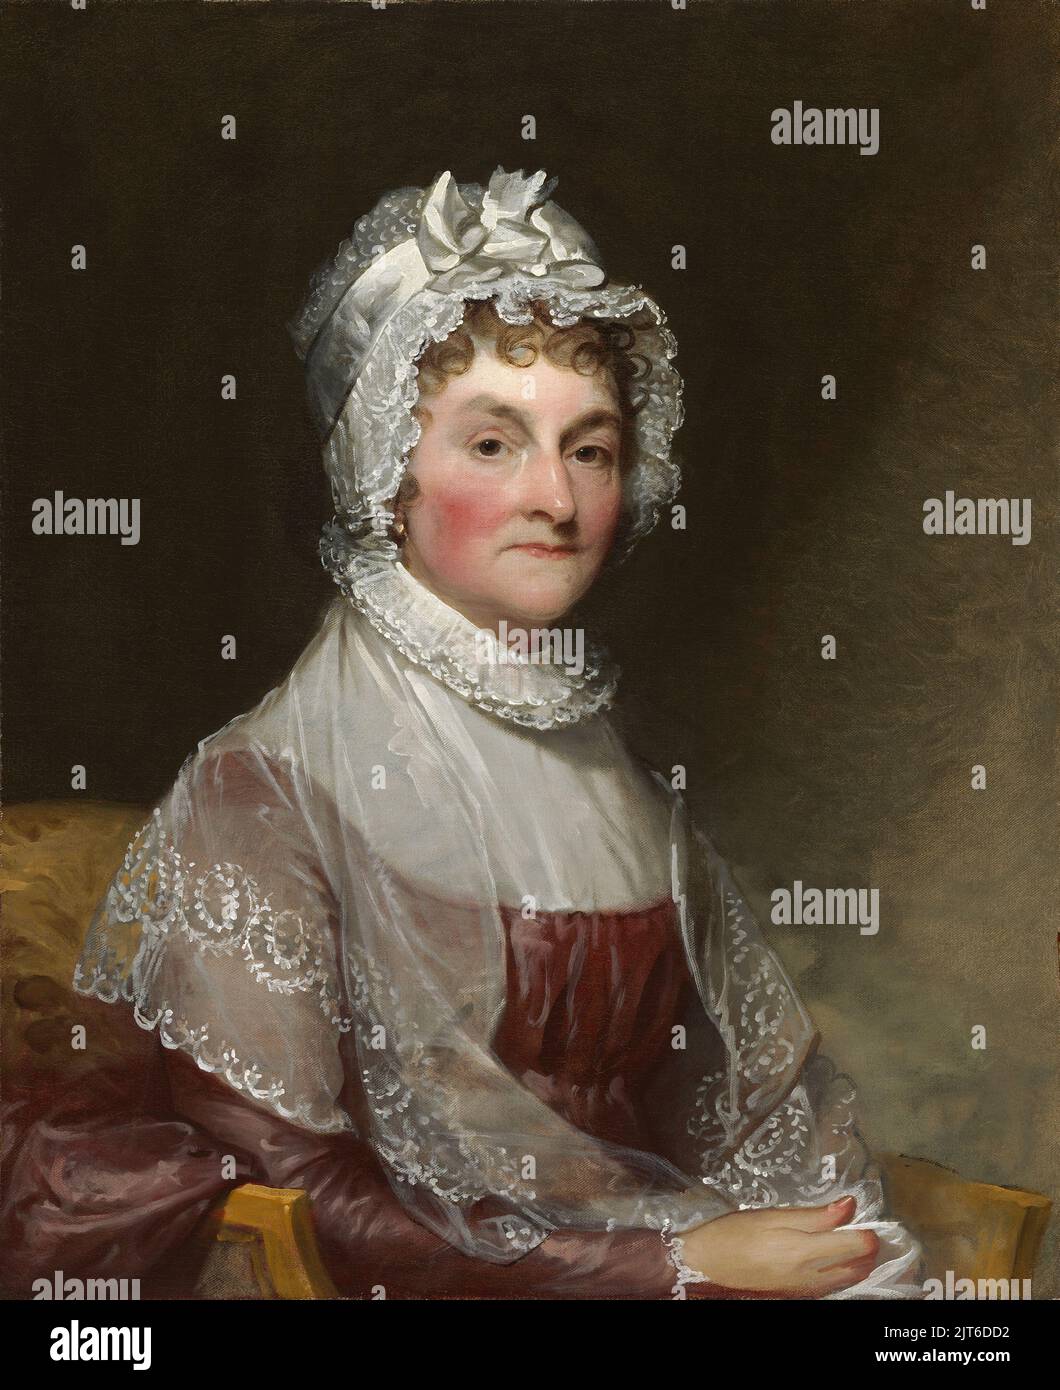 Ein Porträt von Abigail Smith Adams, der Frau des zweiten US-Präsidenten John Adams. Gemalt von Gilbert Stuart. Stockfoto